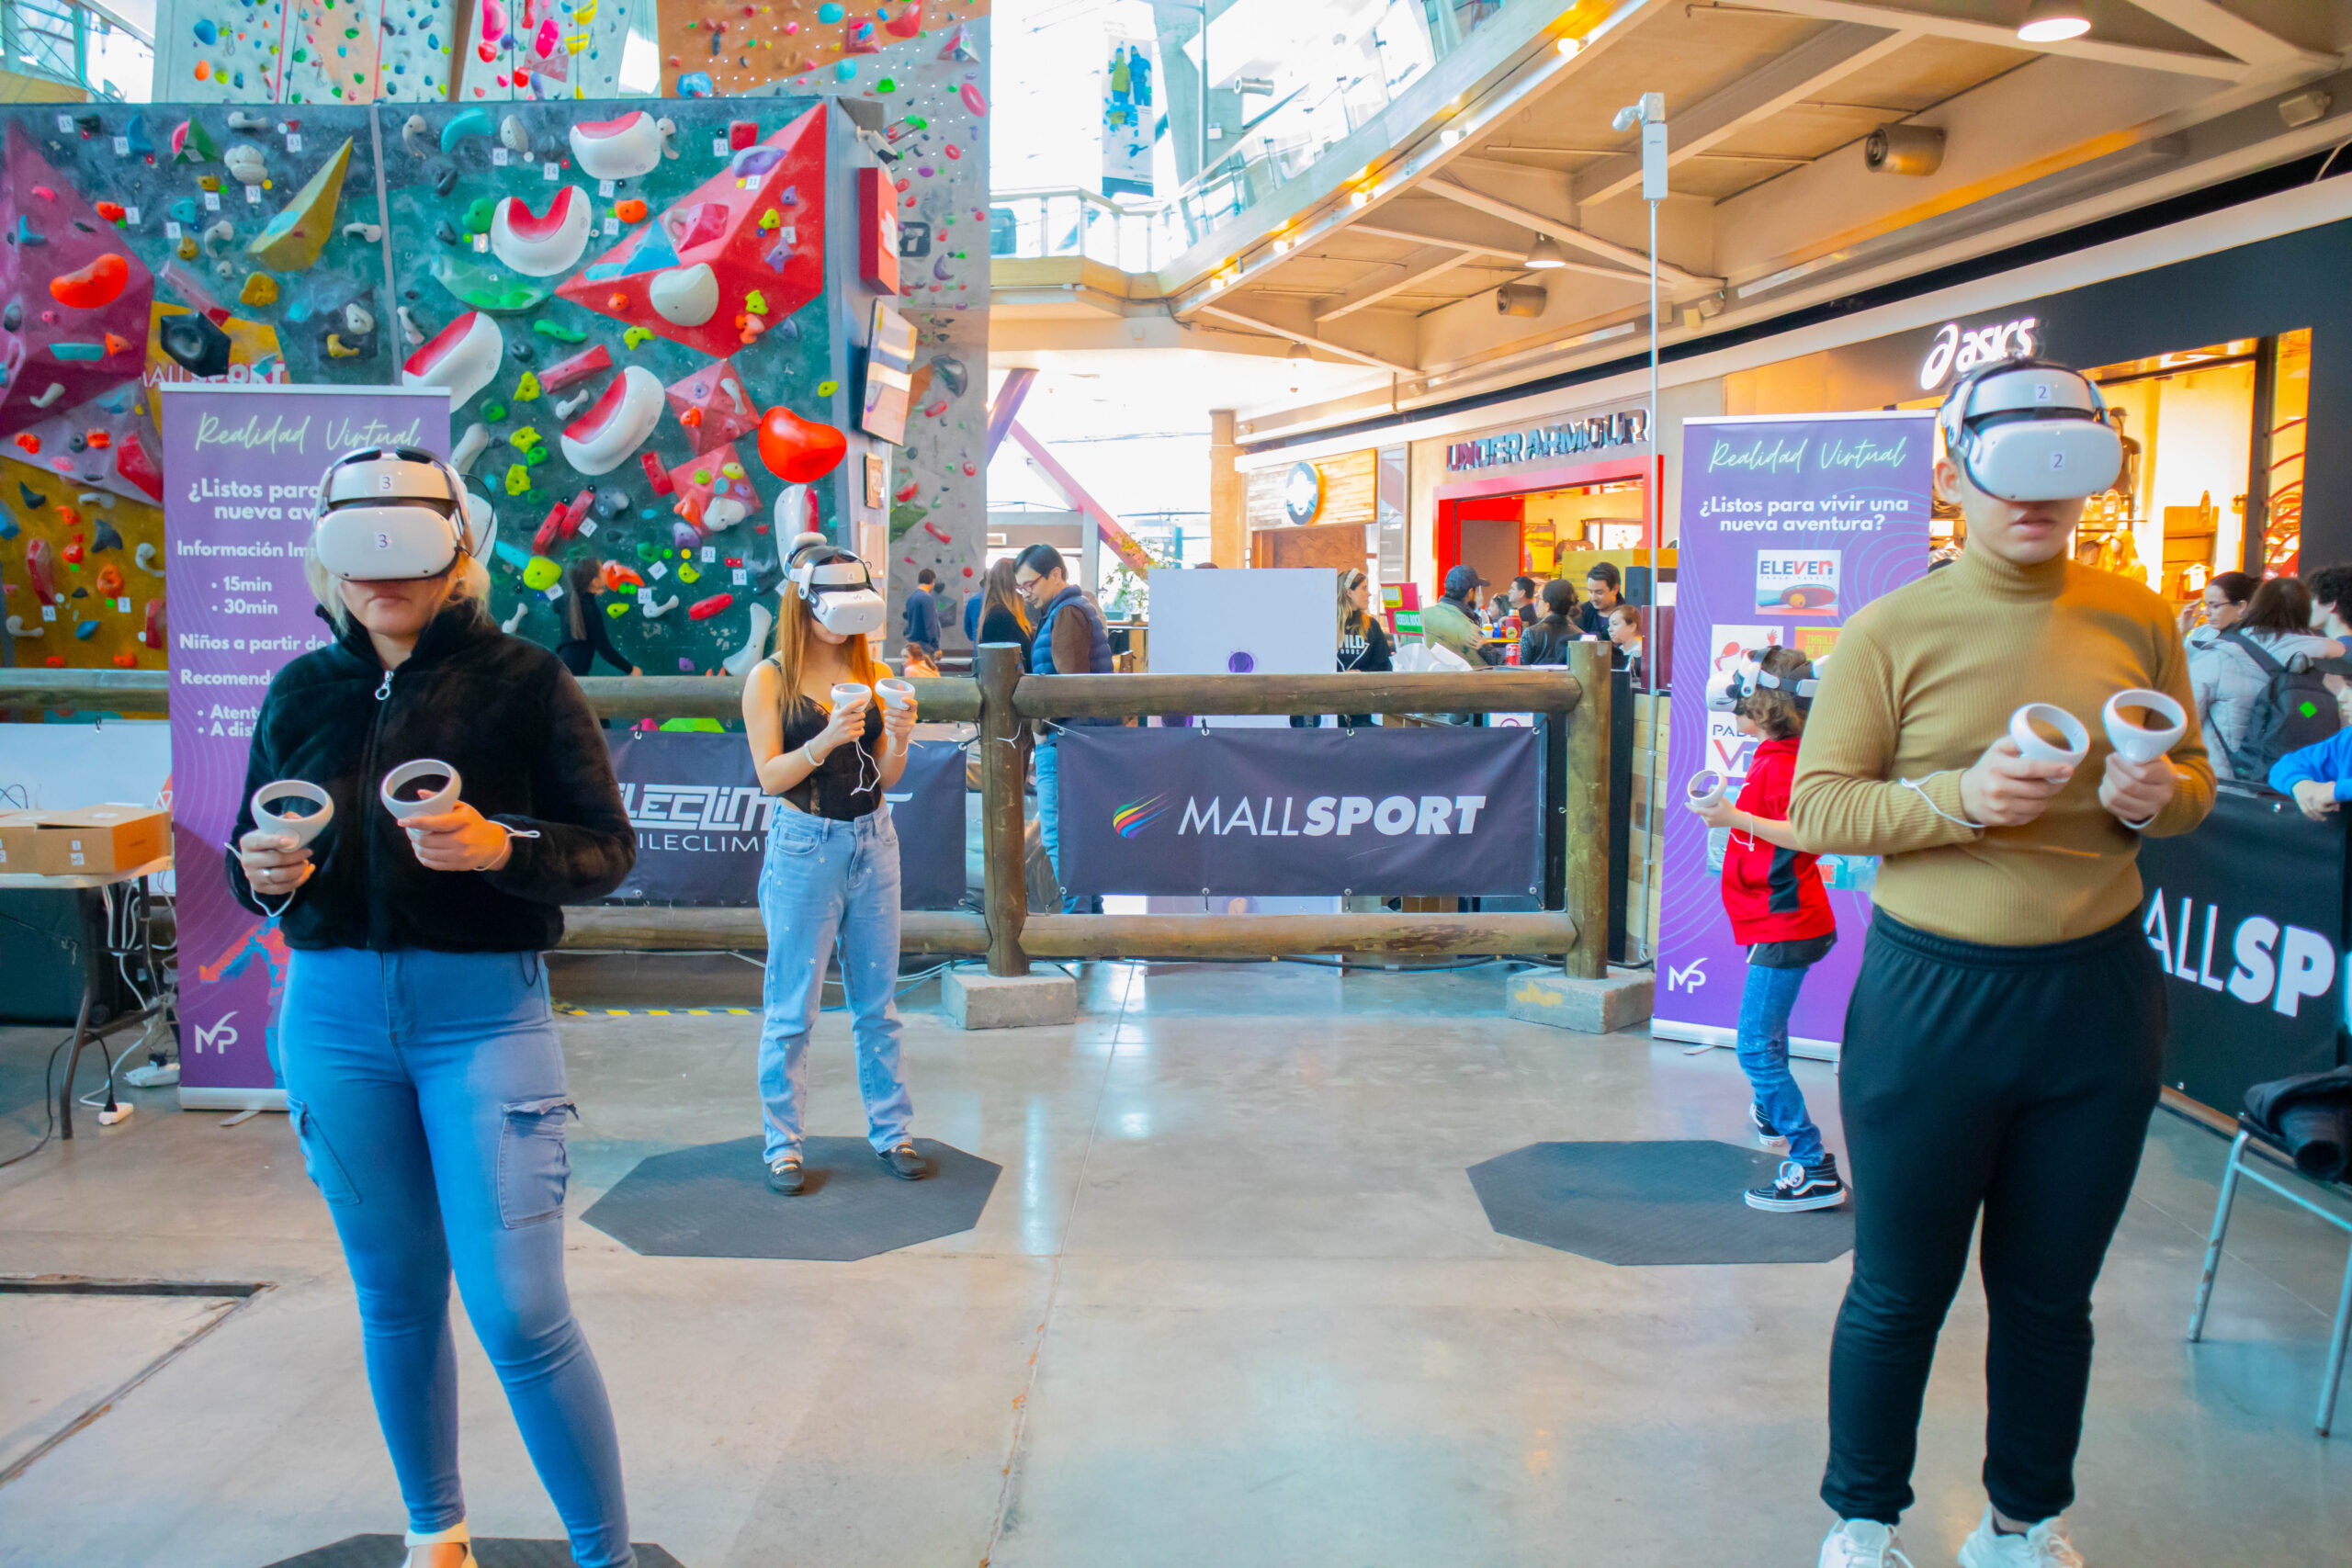 Realidad virtual con desafíos, fútbol y  juegos para explorar son parte de las actividades gratuitas para los más pequeños durante estas vacaciones de invierno en Mall Sport